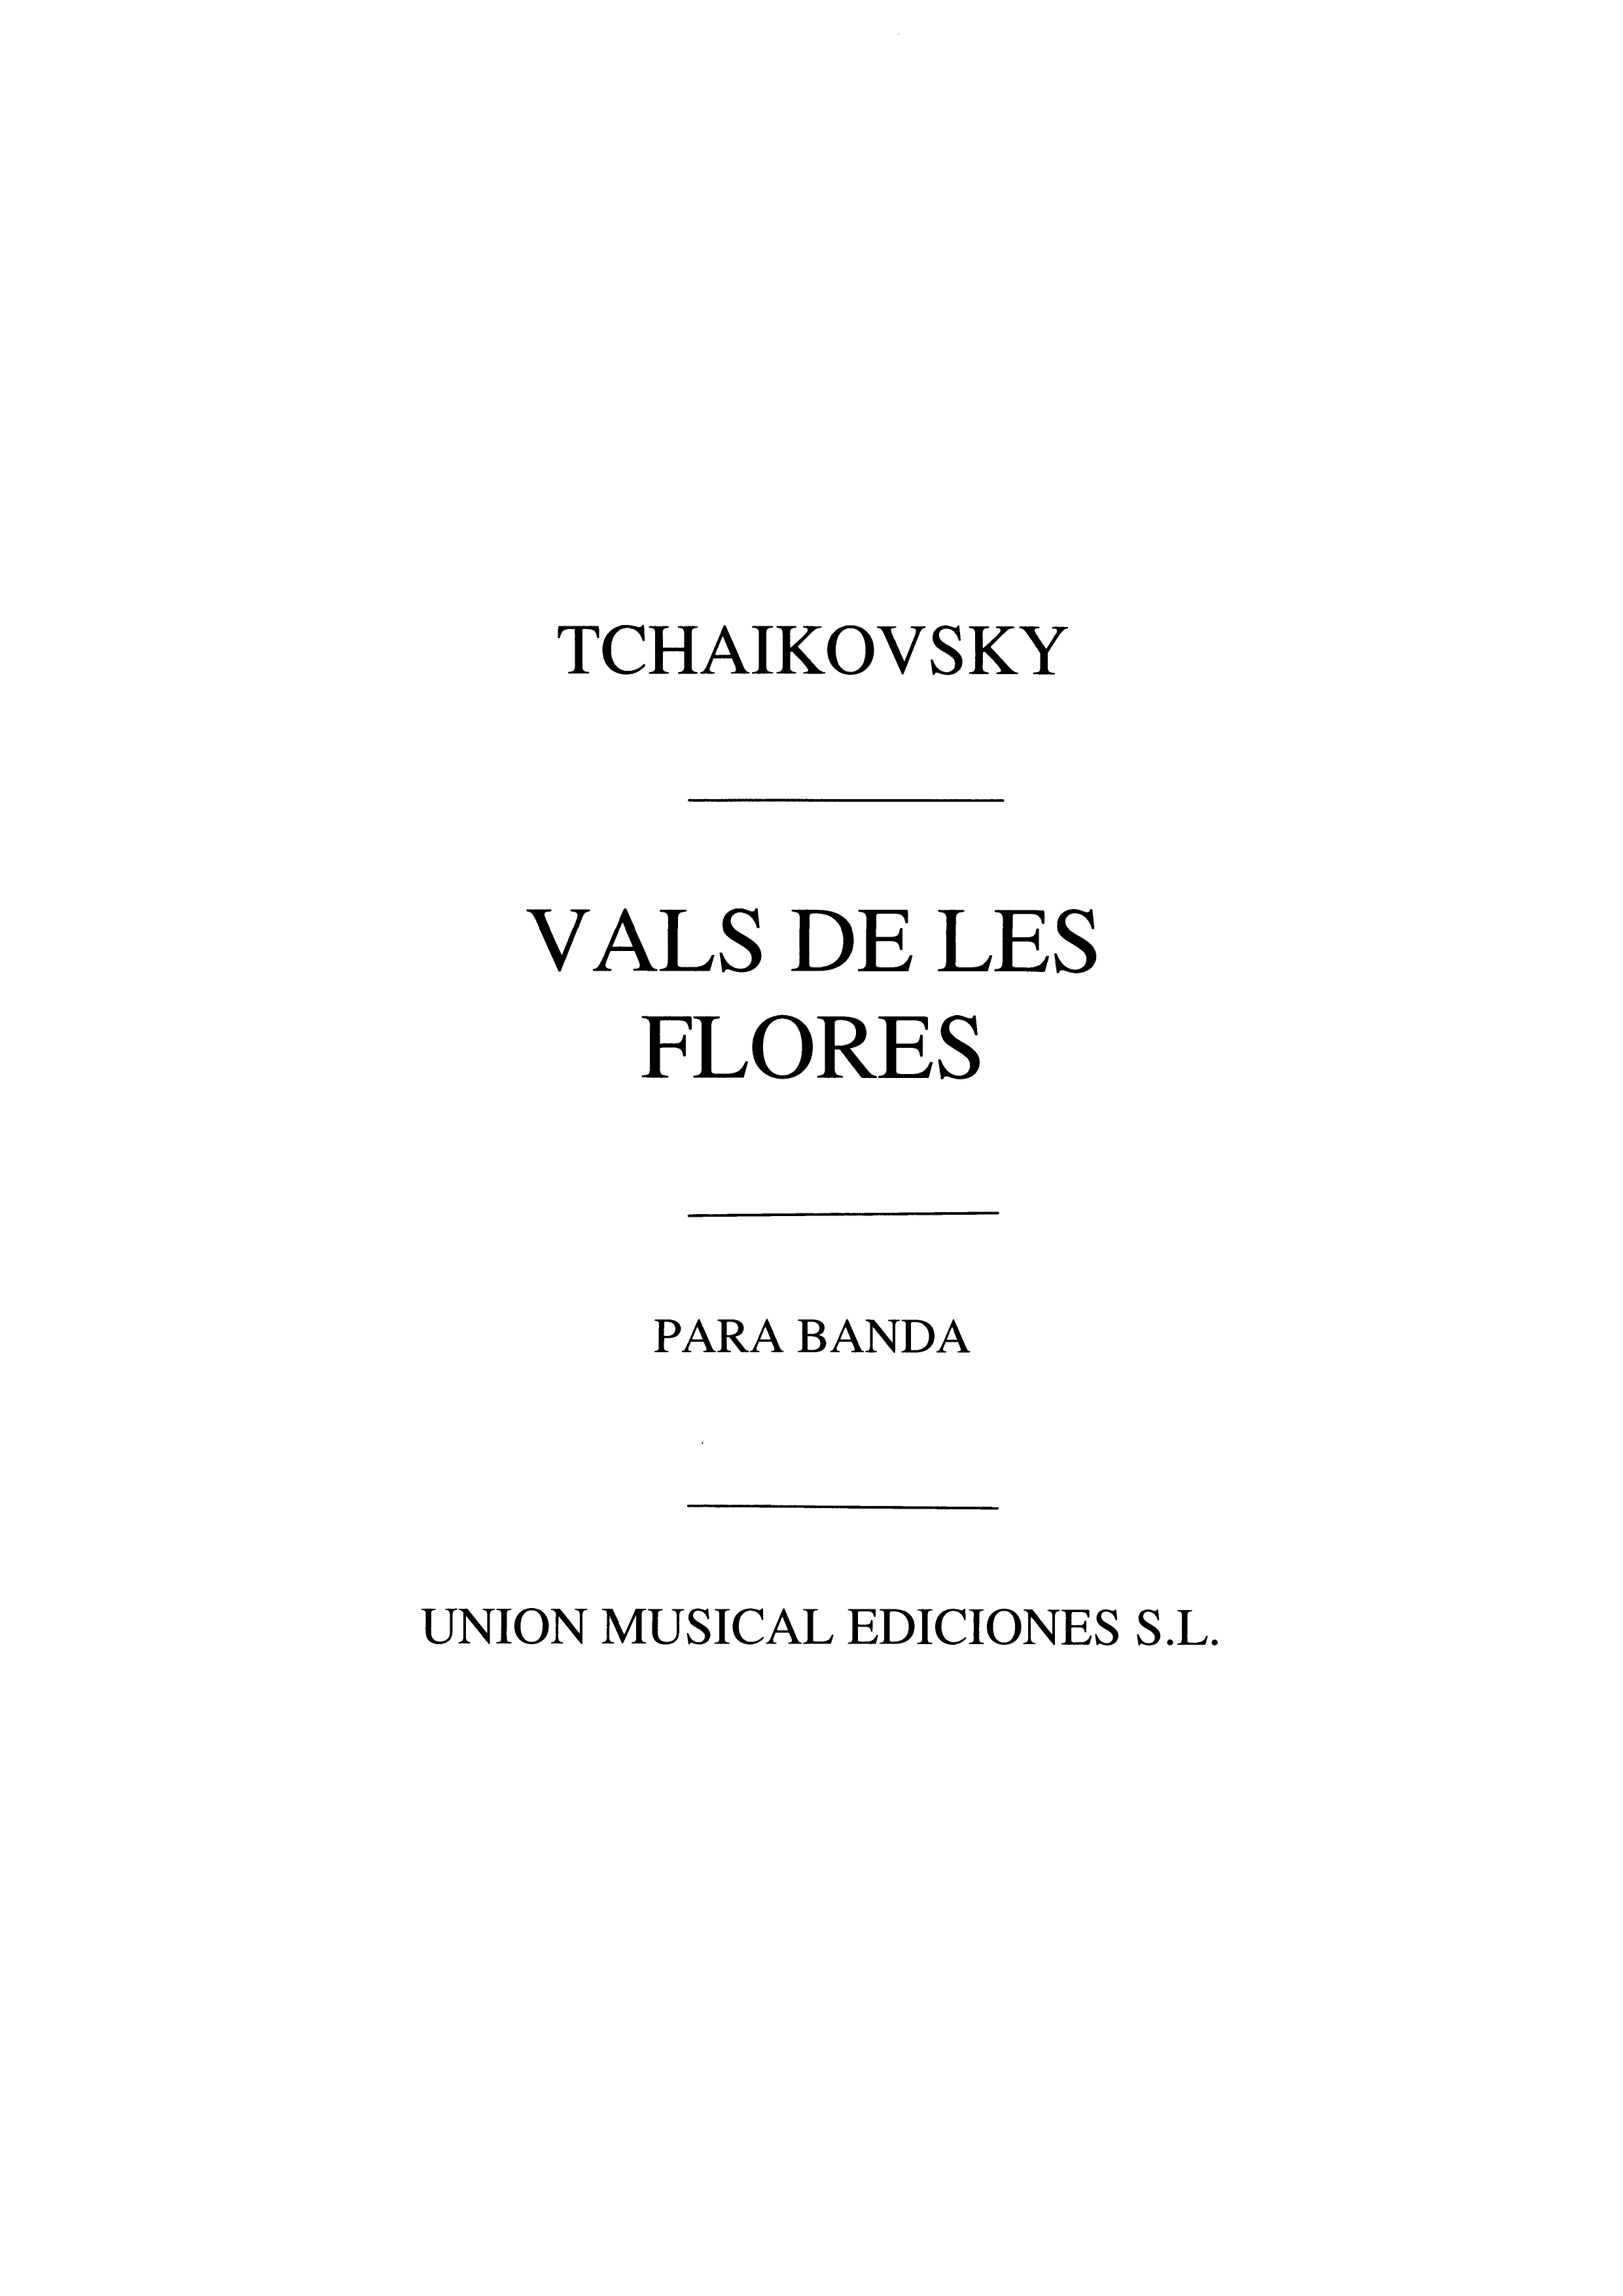 Tchaikovsky: Vals De Las Flores for Band